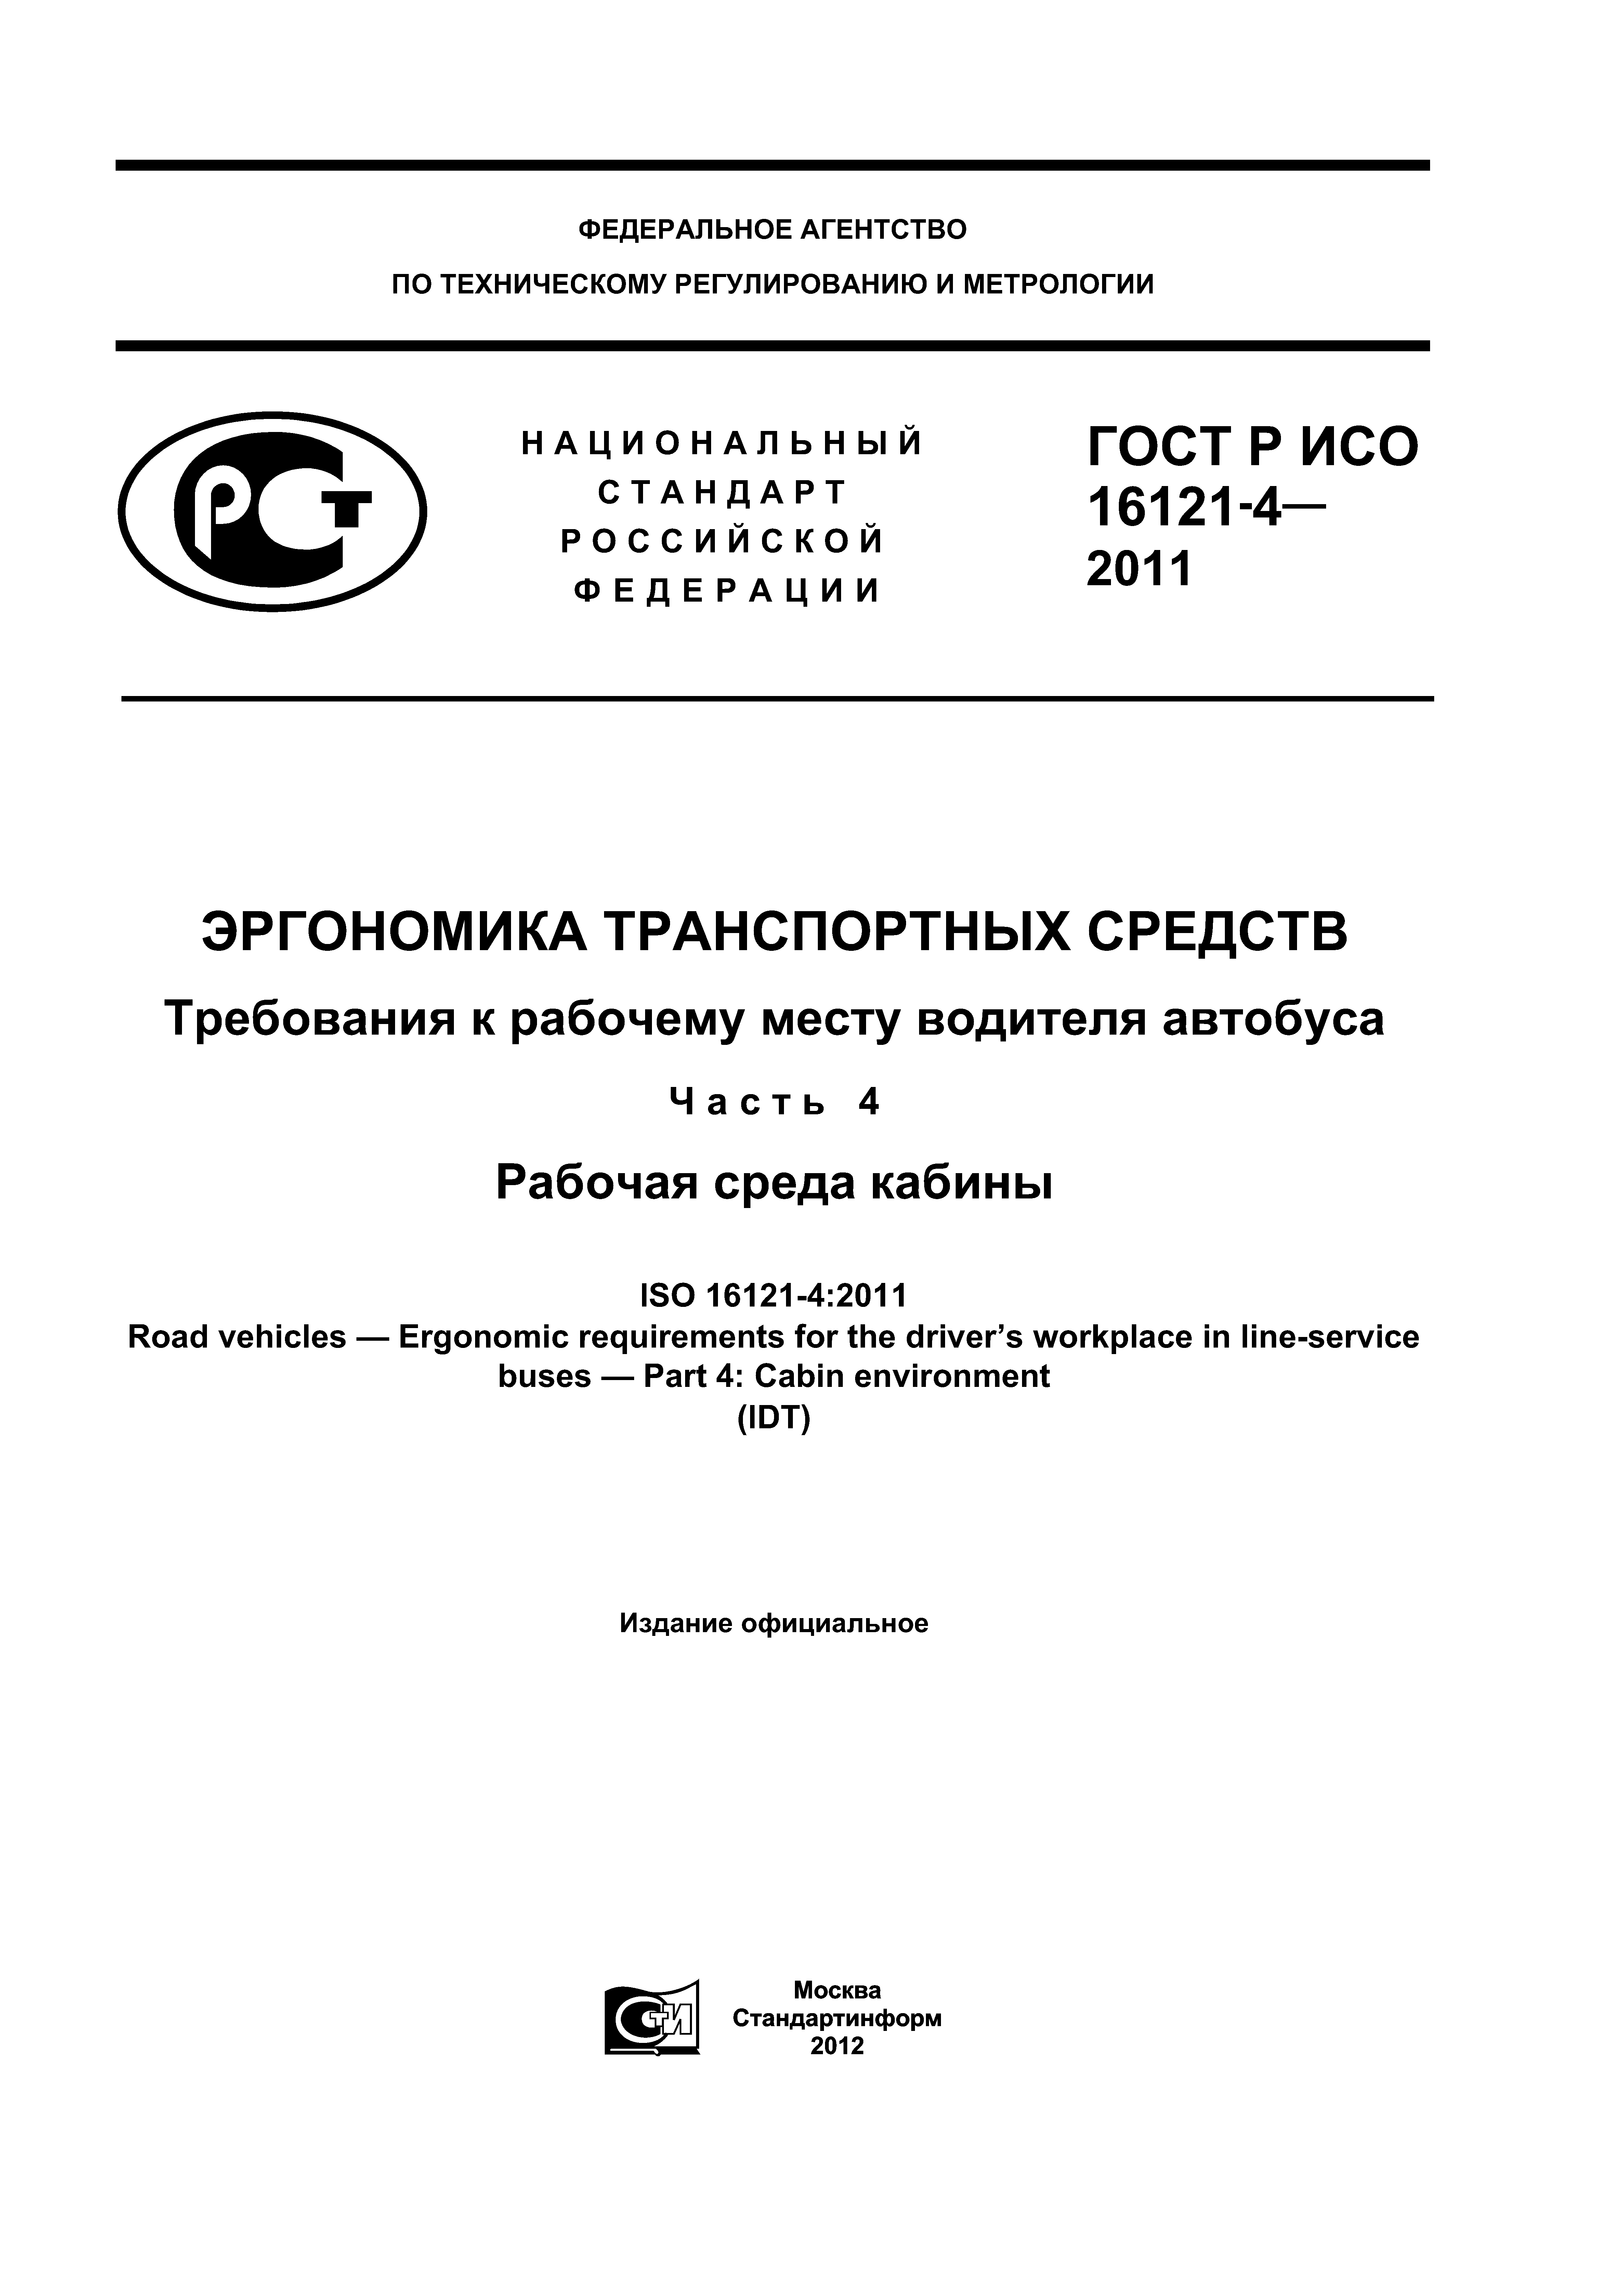 ГОСТ Р ИСО 16121-4-2011